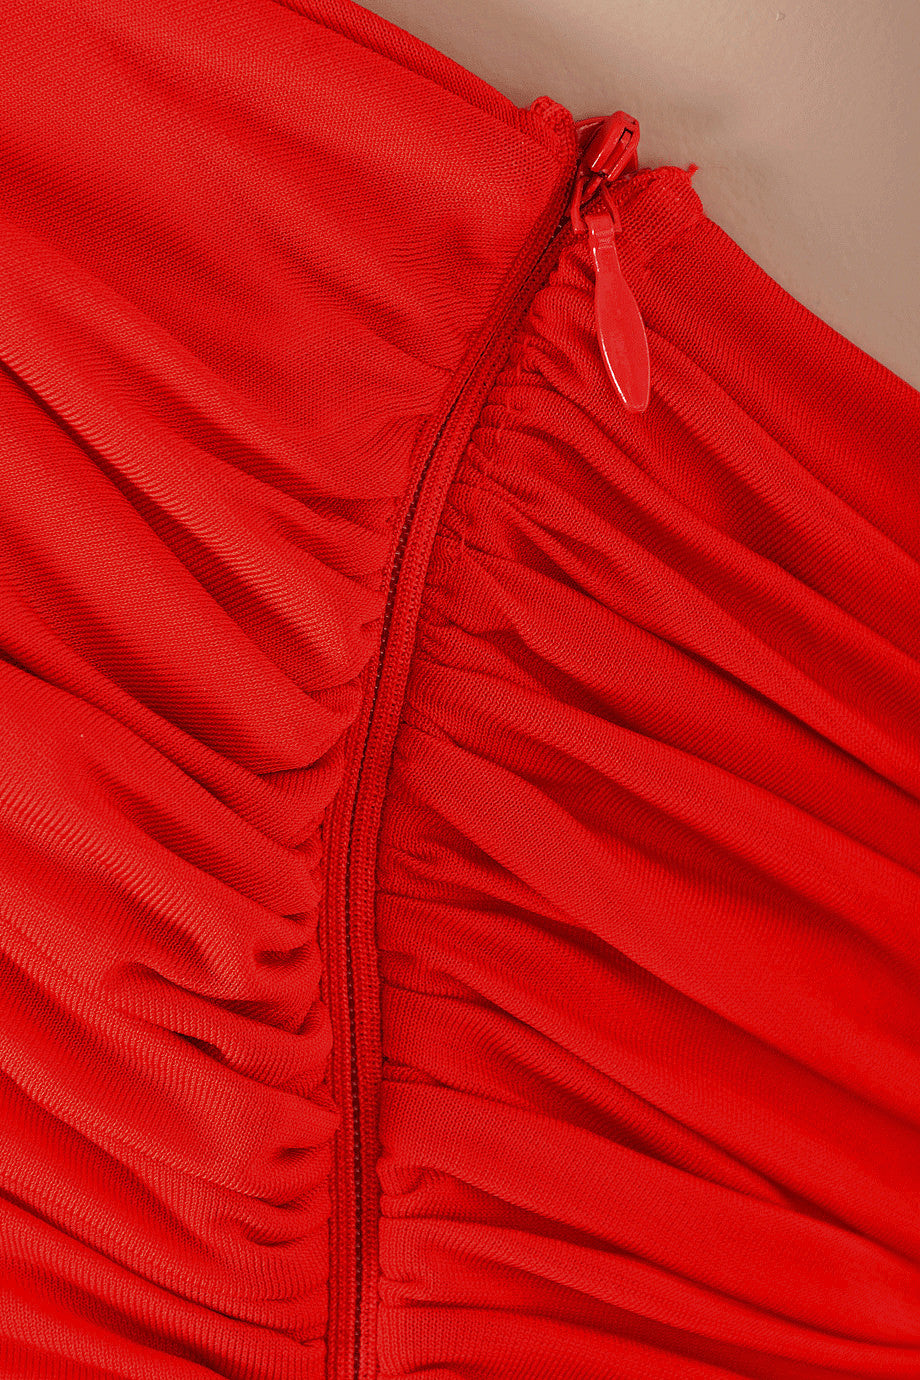 DRAPED Κόκκινο Φόρεμα | Γυναικεία Ρούχα - Φορέματα  |  Draped Red Dress